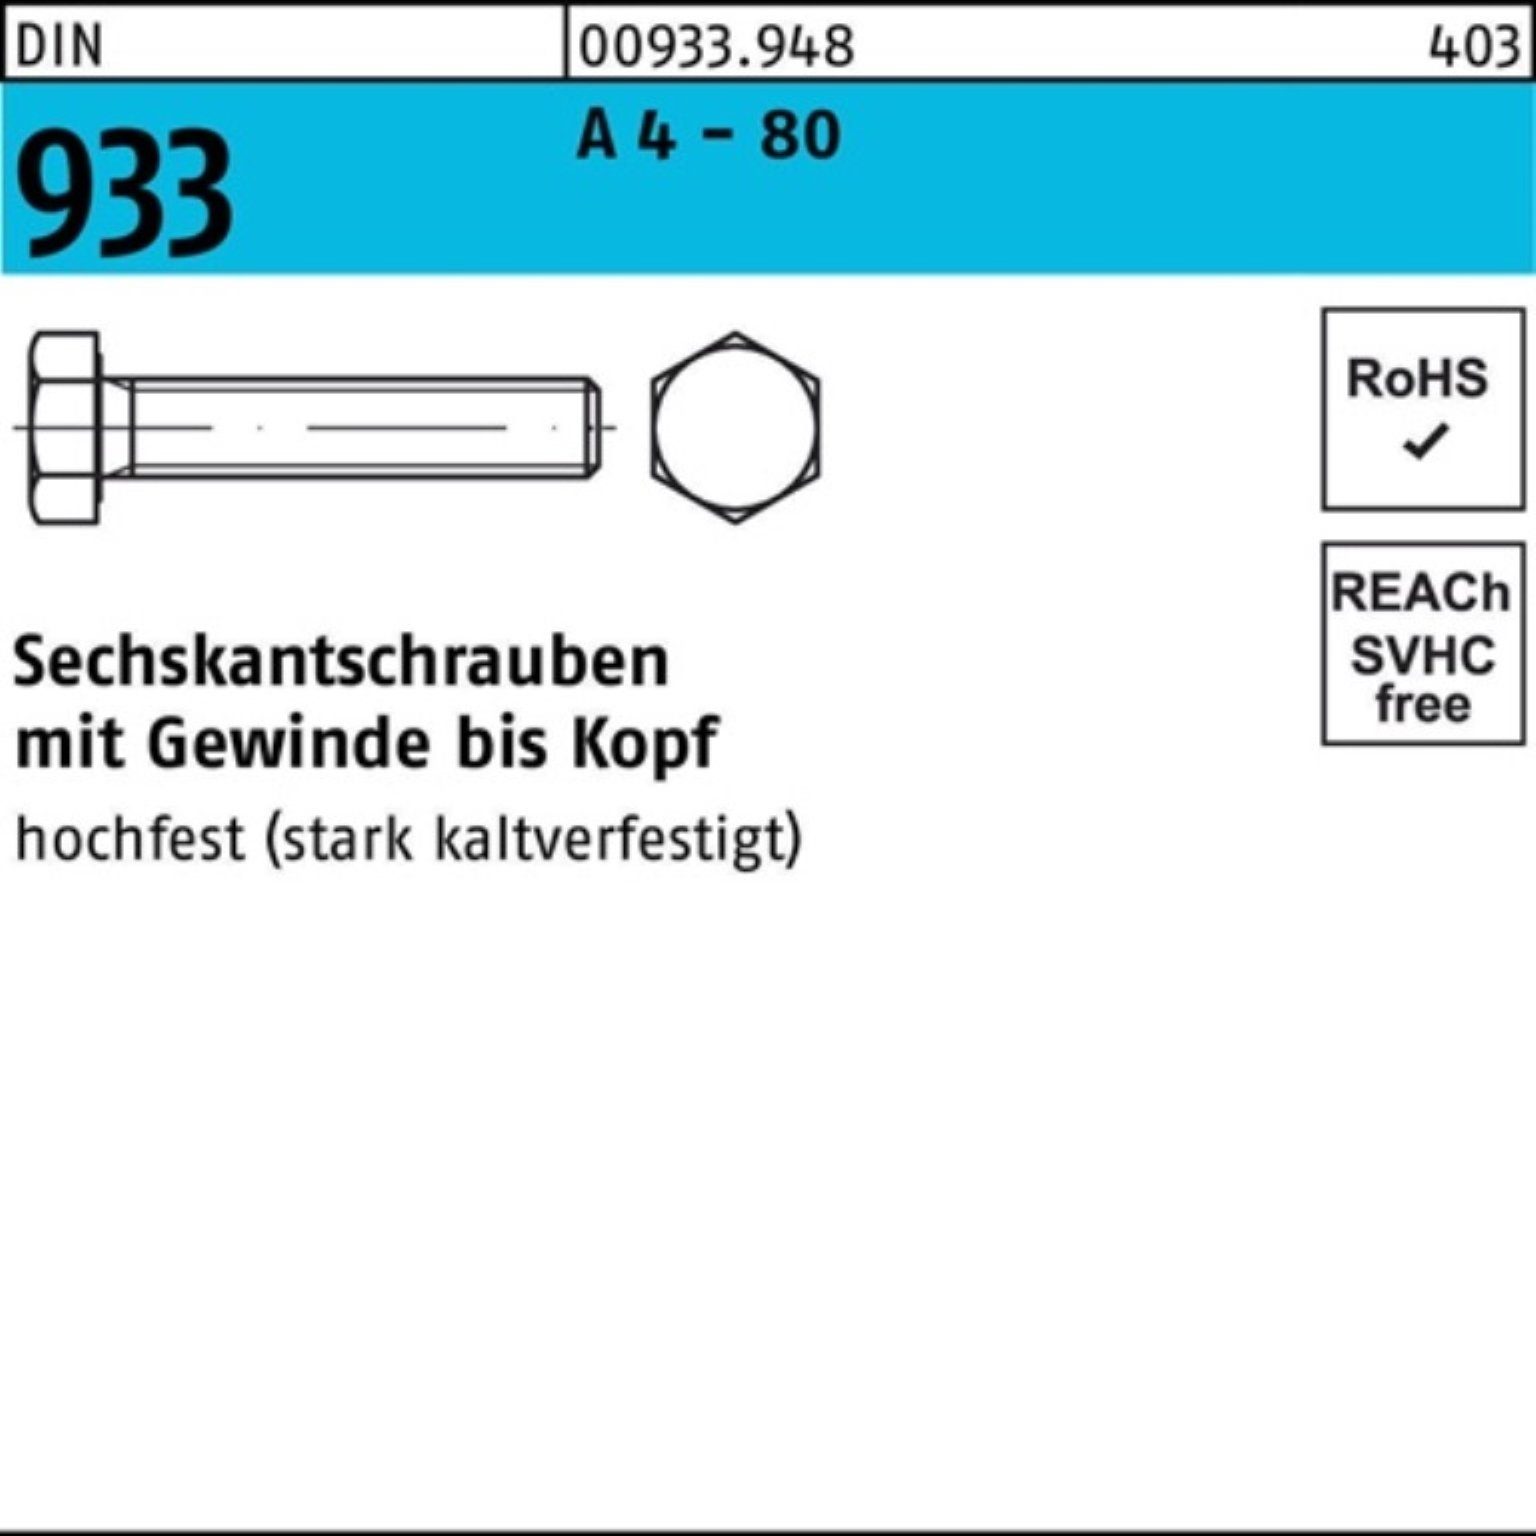 Reyher Sechskantschraube 100er Pack Sechskantschraube DIN 933 VG M16x 80 A 4 - 80 25 Stück DIN